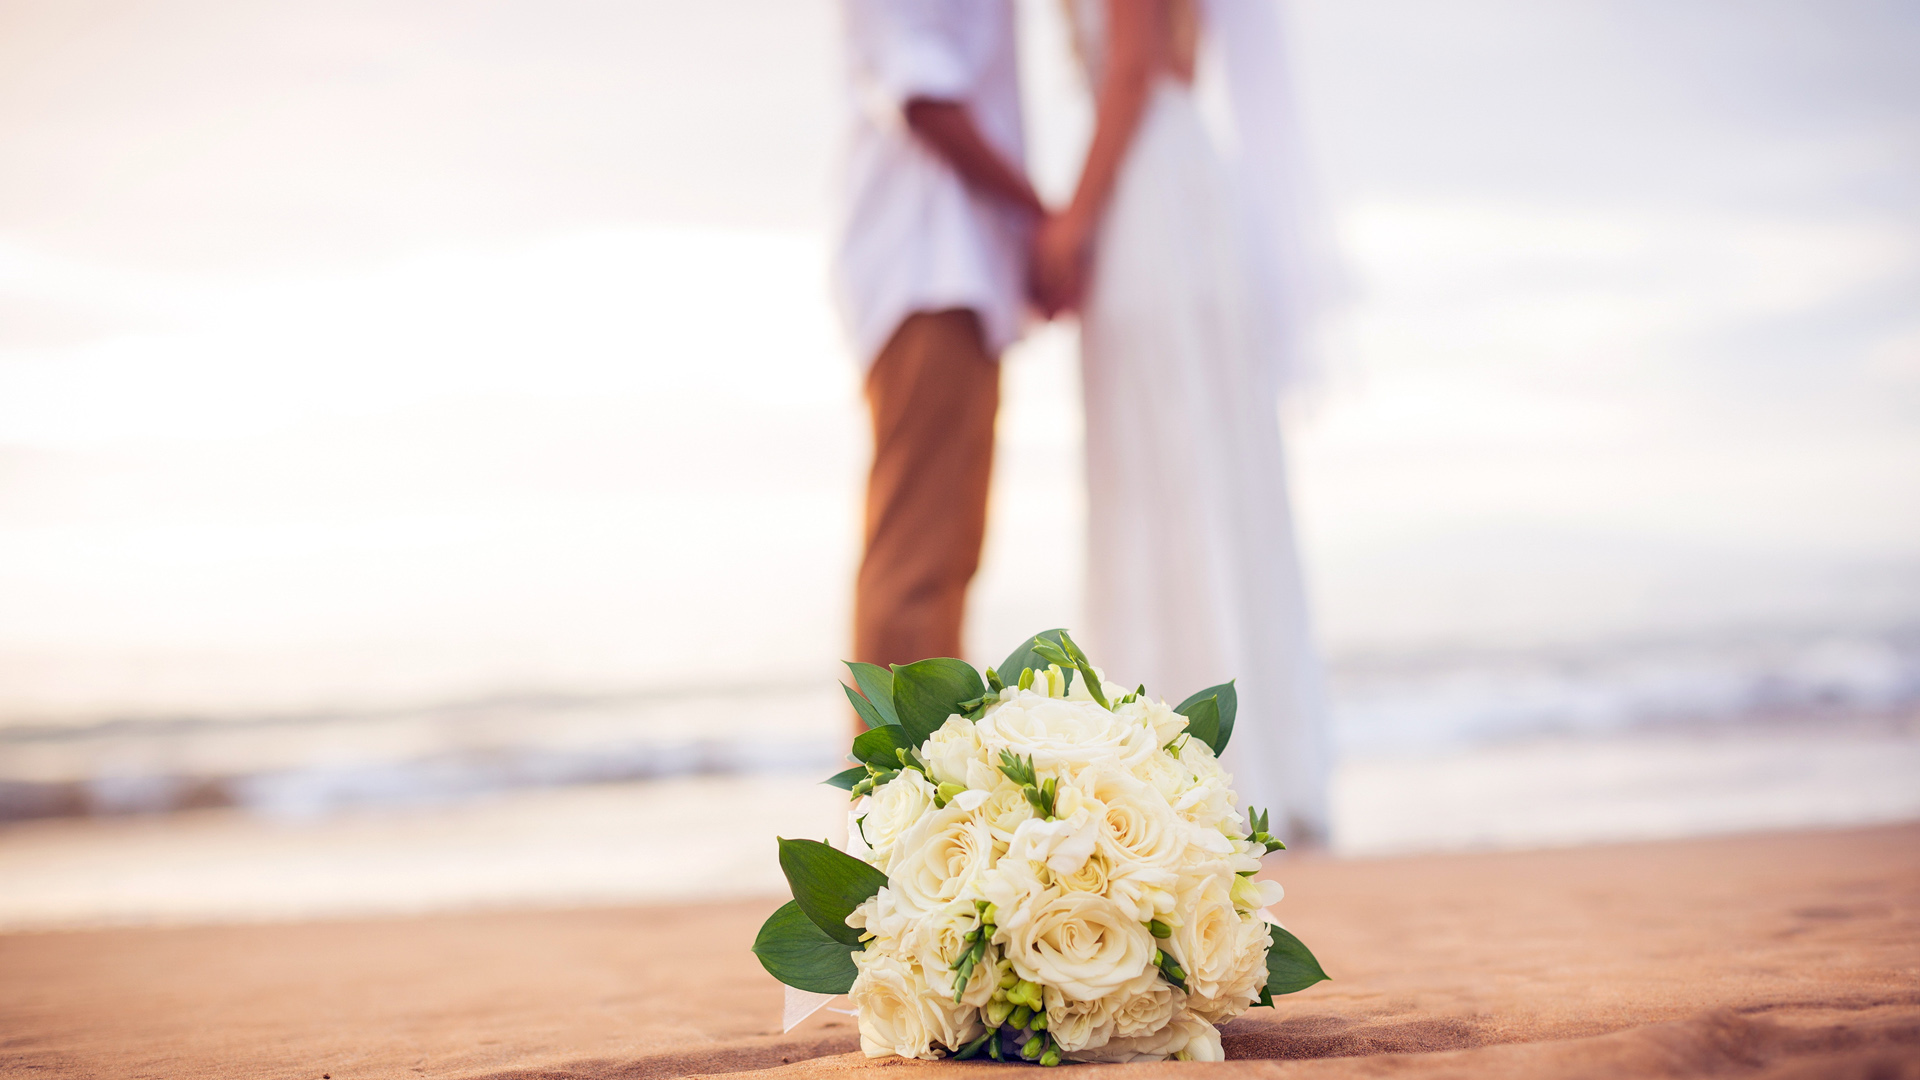 婚礼，婚纱照，新娘，新郎，花束，鲜花，沙滩，大海，浪漫的婚纱照桌面壁纸